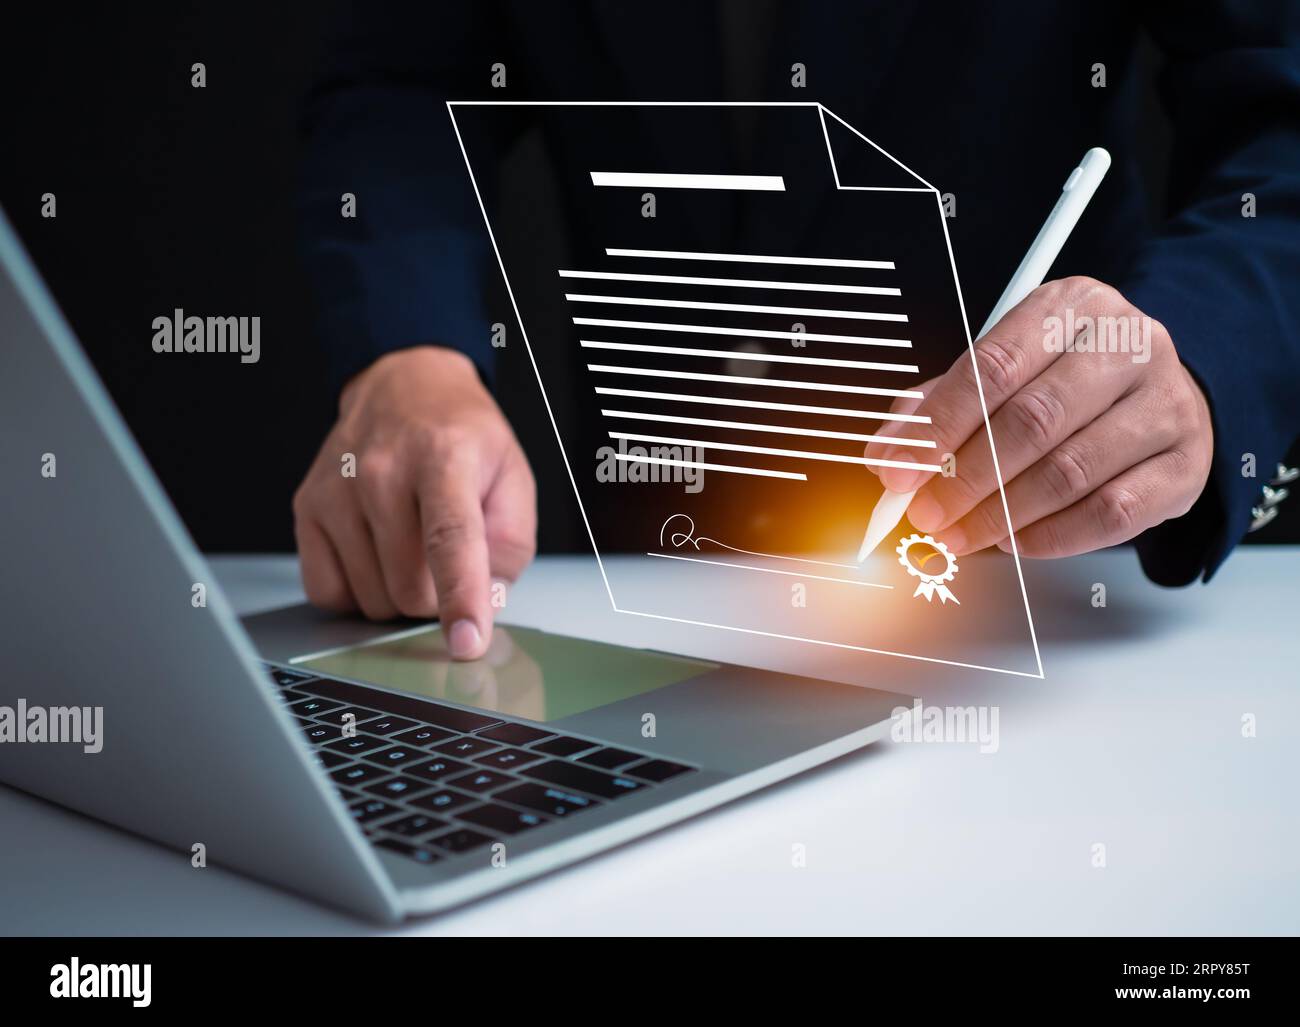 Businessman use electronic pen sign signature on electronic E-signing, data sheet document management, Electronic signature and paperless office conce Stock Photo